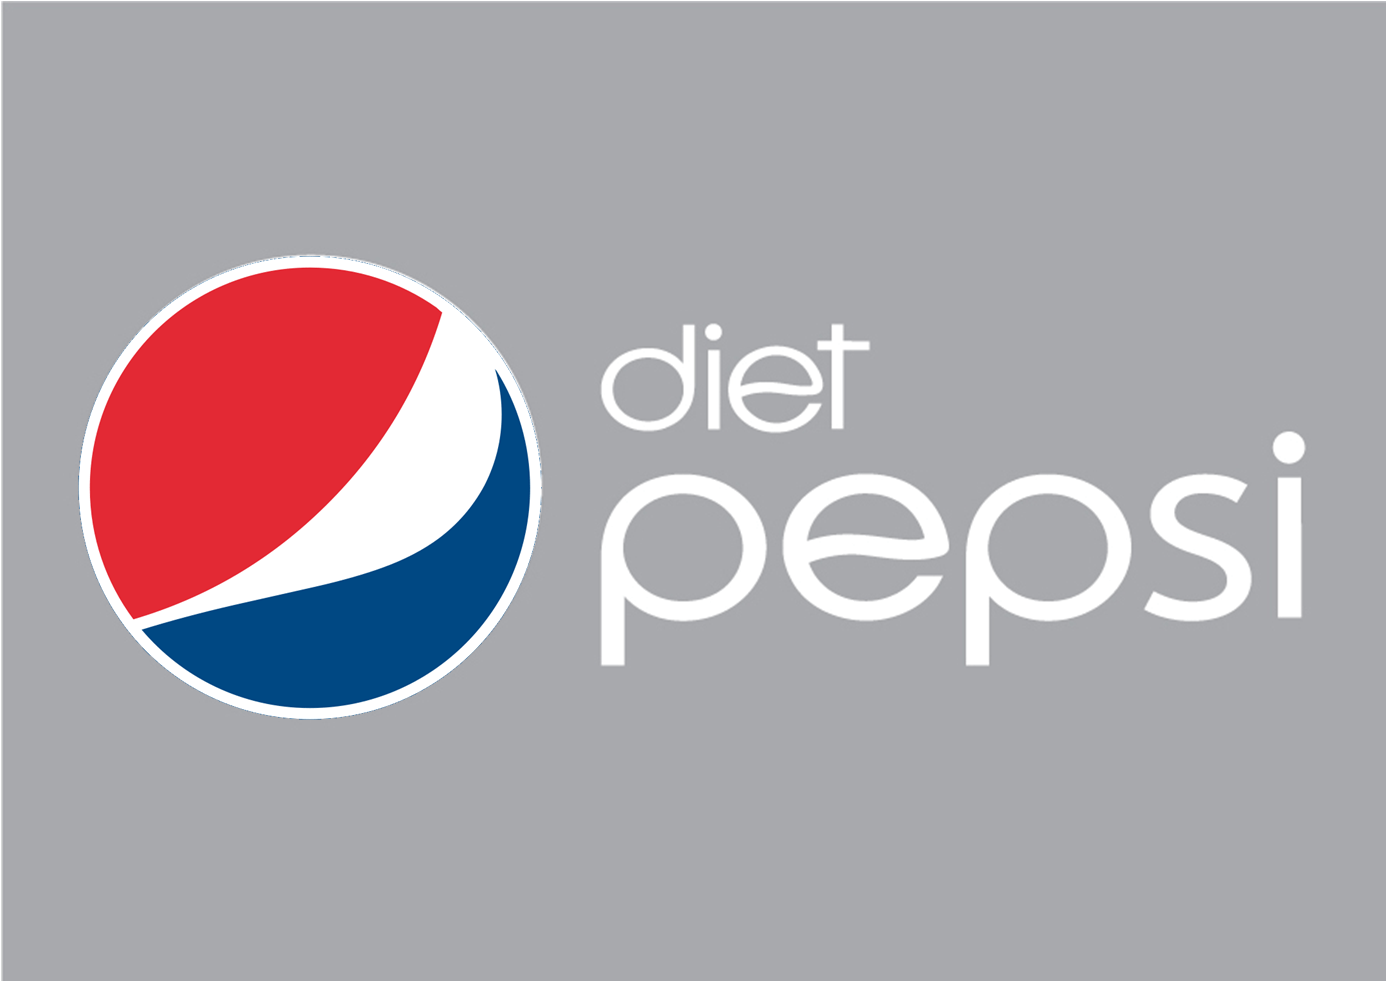 Coke VS Pepsi. Cola versus Cola